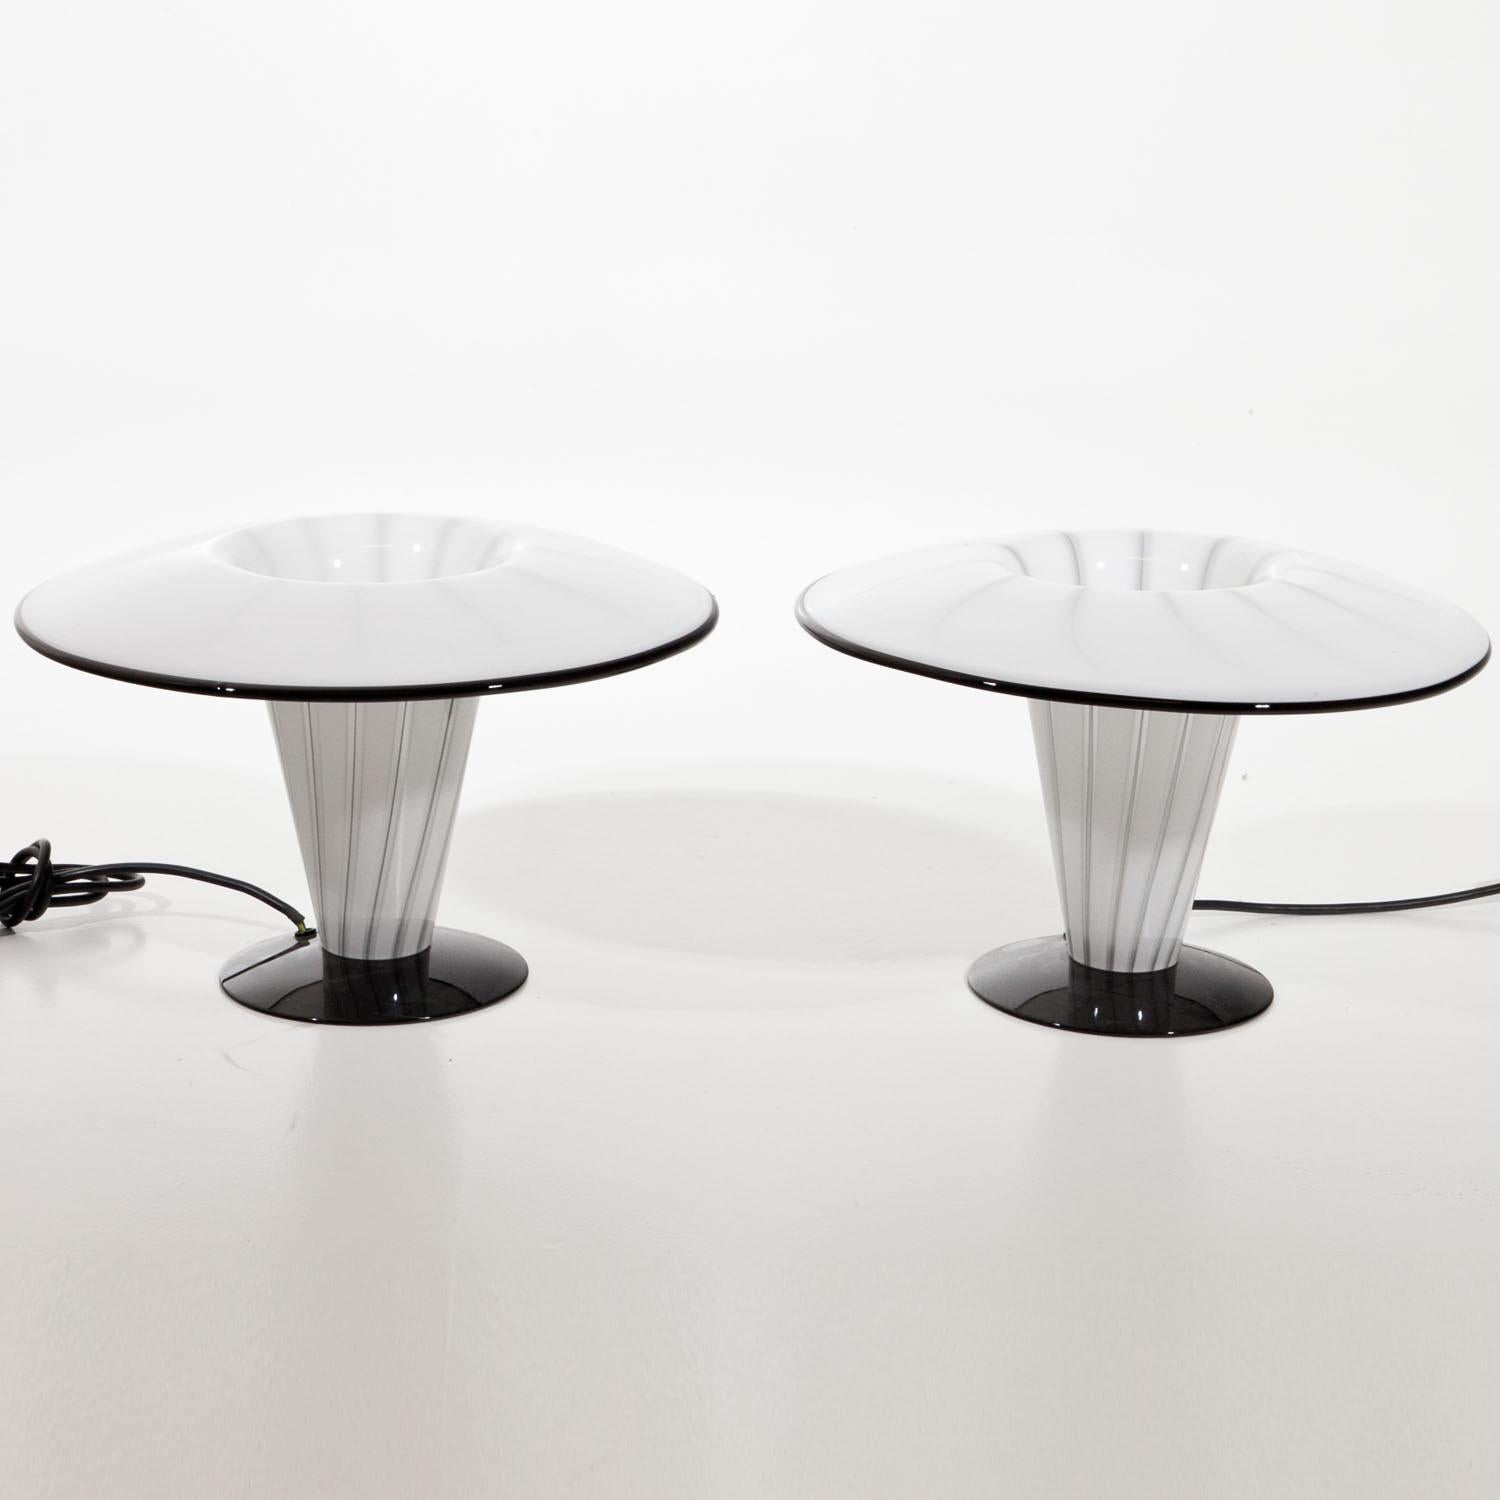 Une paire décorative de petites lampes en verre italiennes.
Forme d'urne en verre blanc et noir.